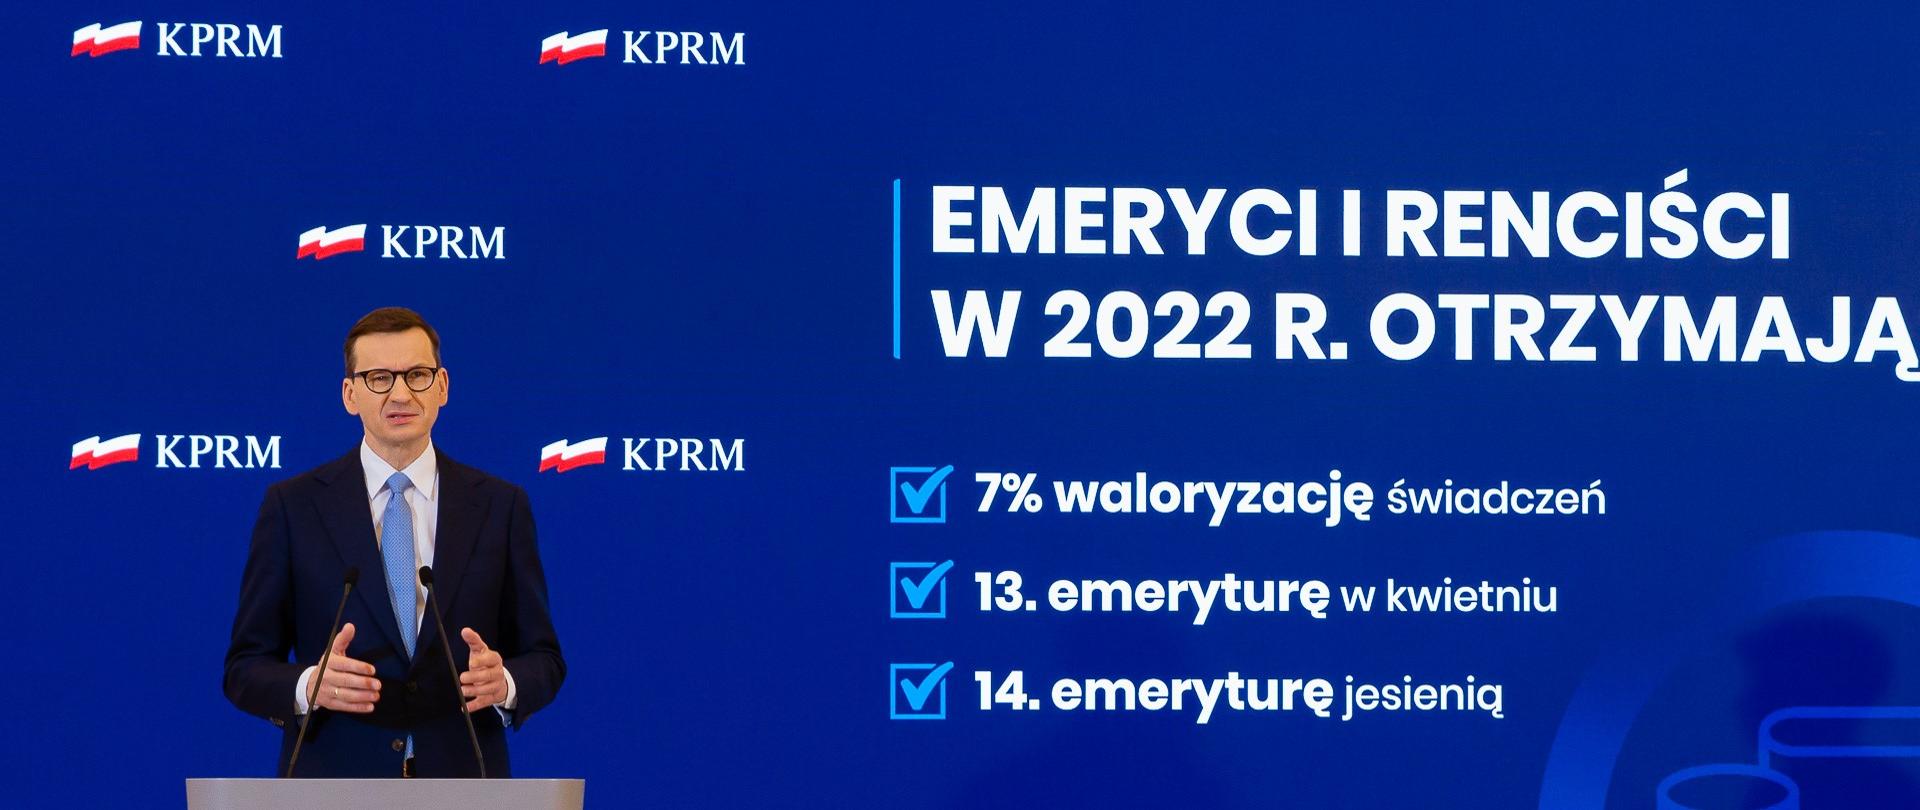 Premier Mateusz Morawiecki podczas konferencji prasowej w KPRM stoi na podeście, przed mównicą, w tle ekran wyświetlający prezentacje